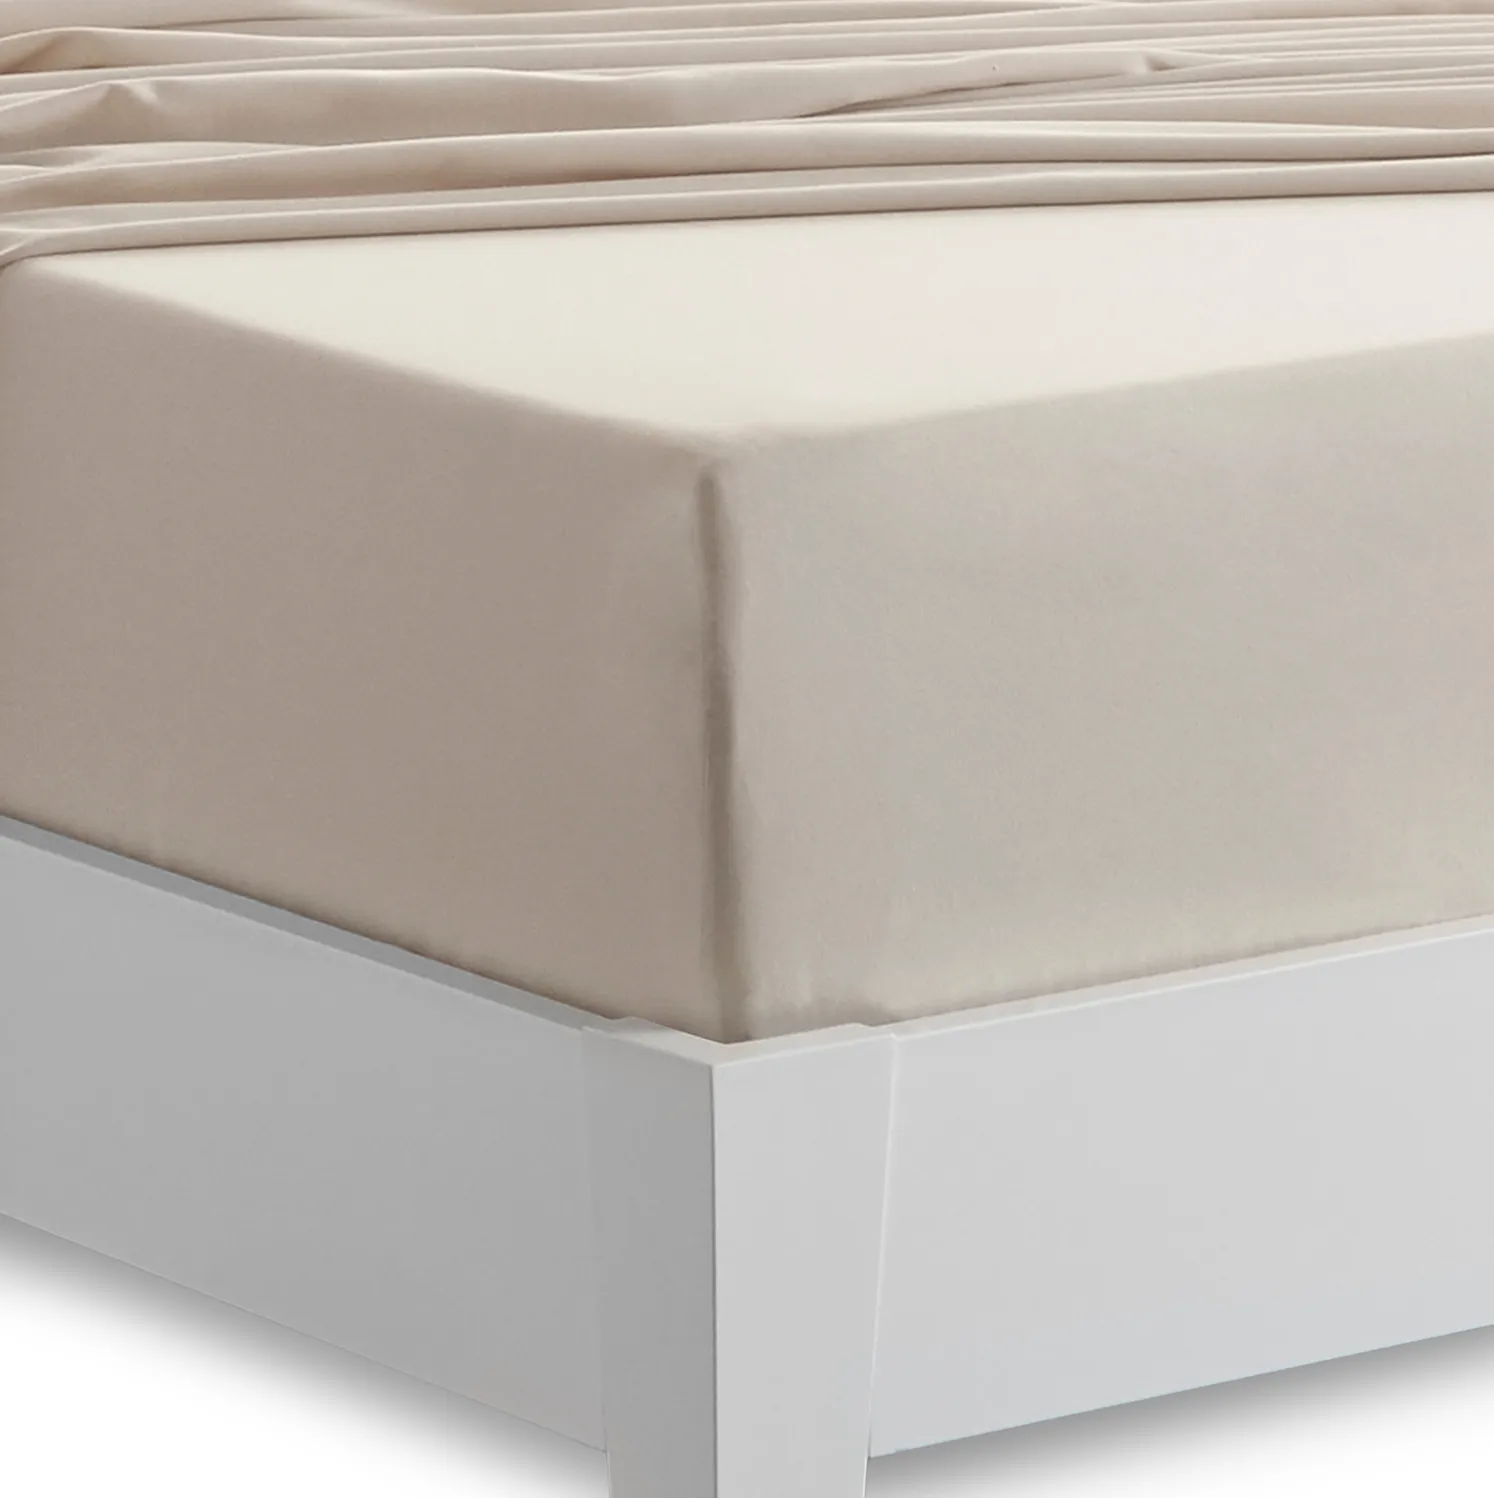 Bedgear Basic Full Medium Beige Sheet Set